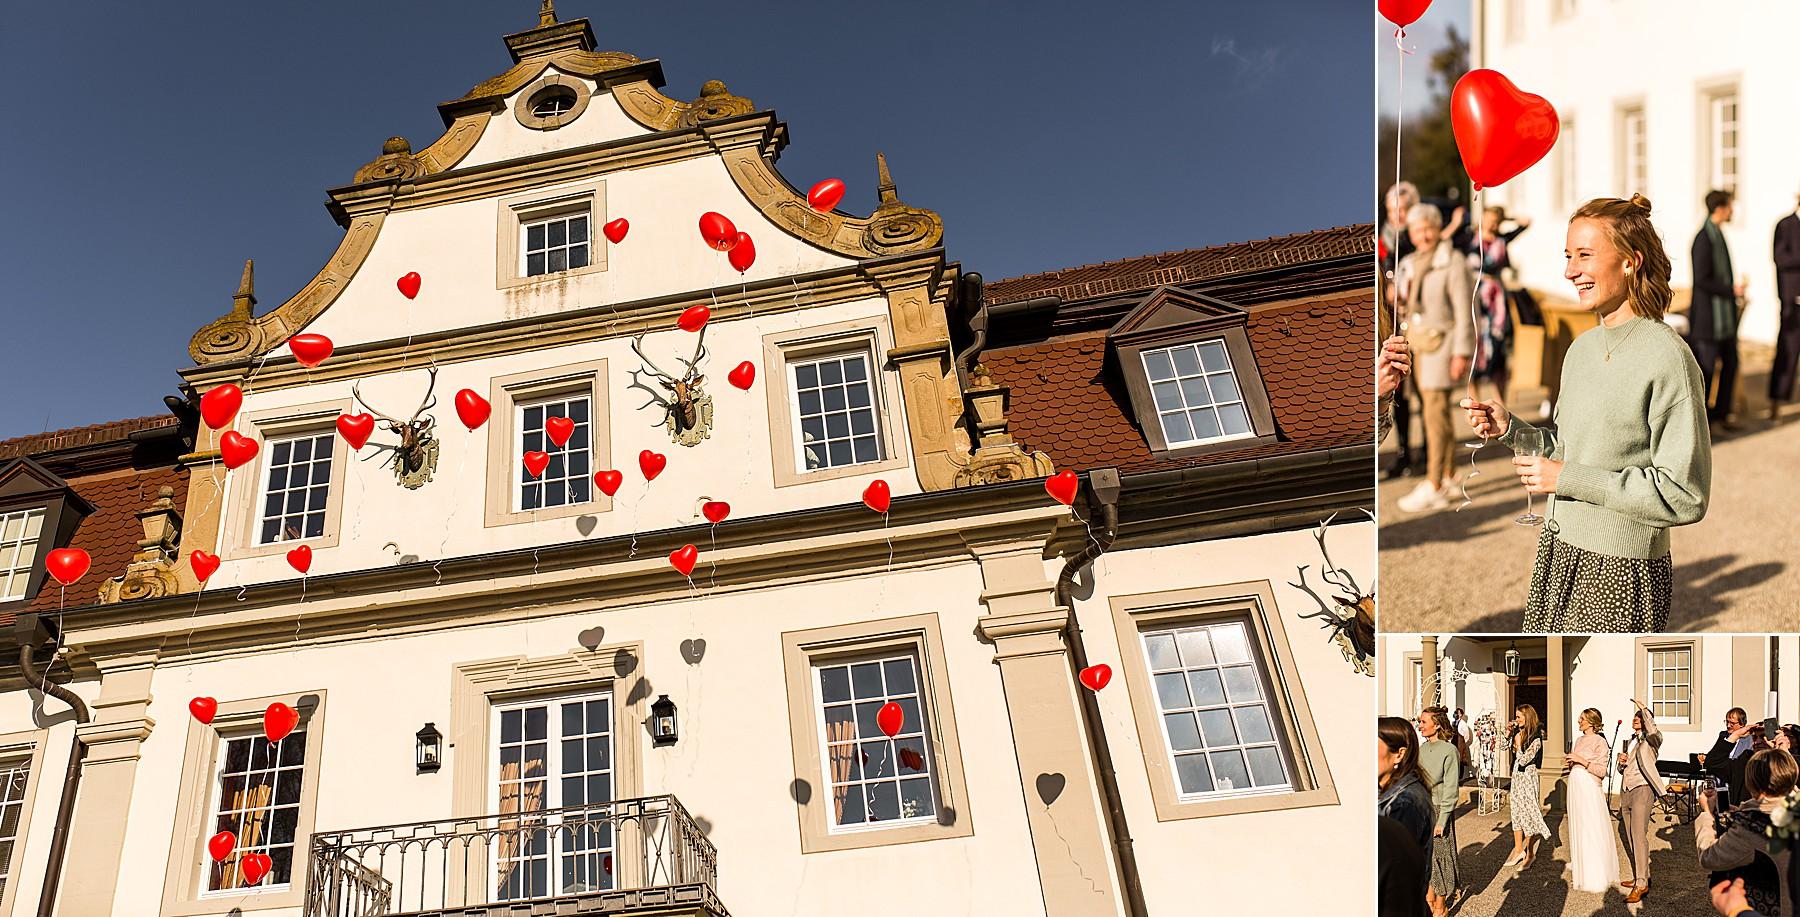 Hochzeit feiern im Wald- und Schlosshotel in Friedrichsruhe bei Öhringen